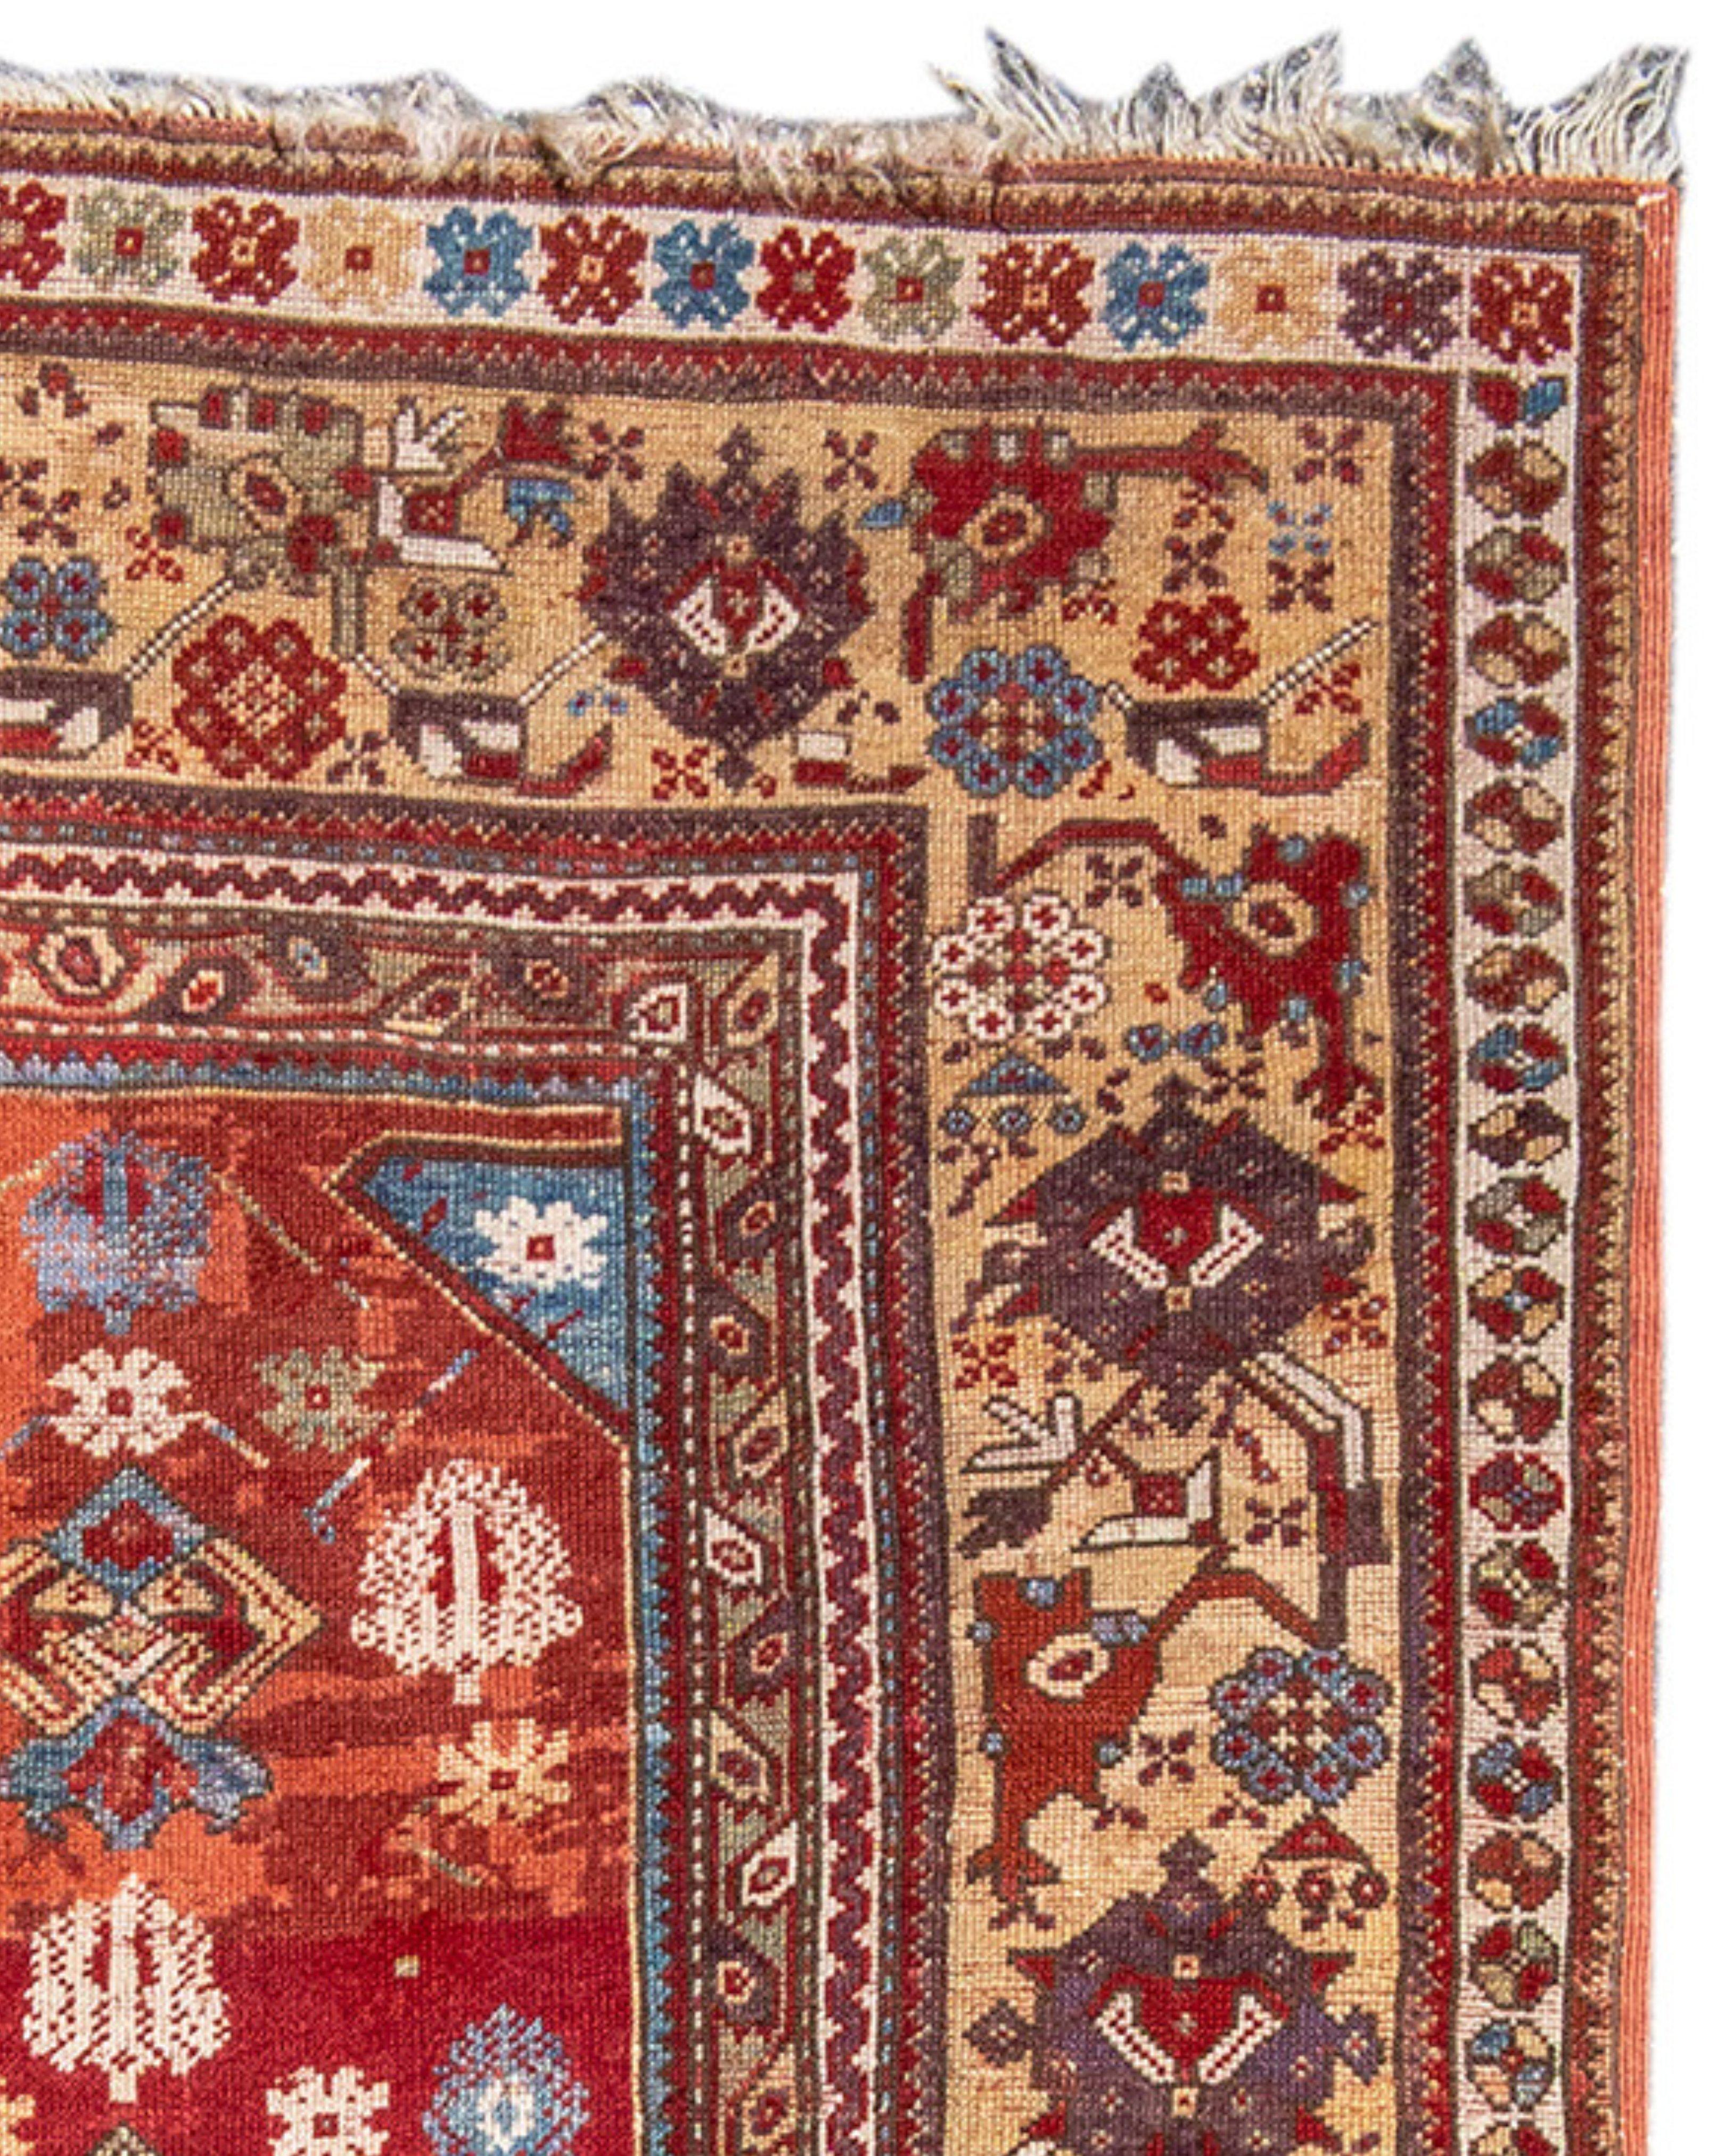 Ancien tapis turc Melas, 19e siècle

Informations supplémentaires :
Dimensions : 3'7